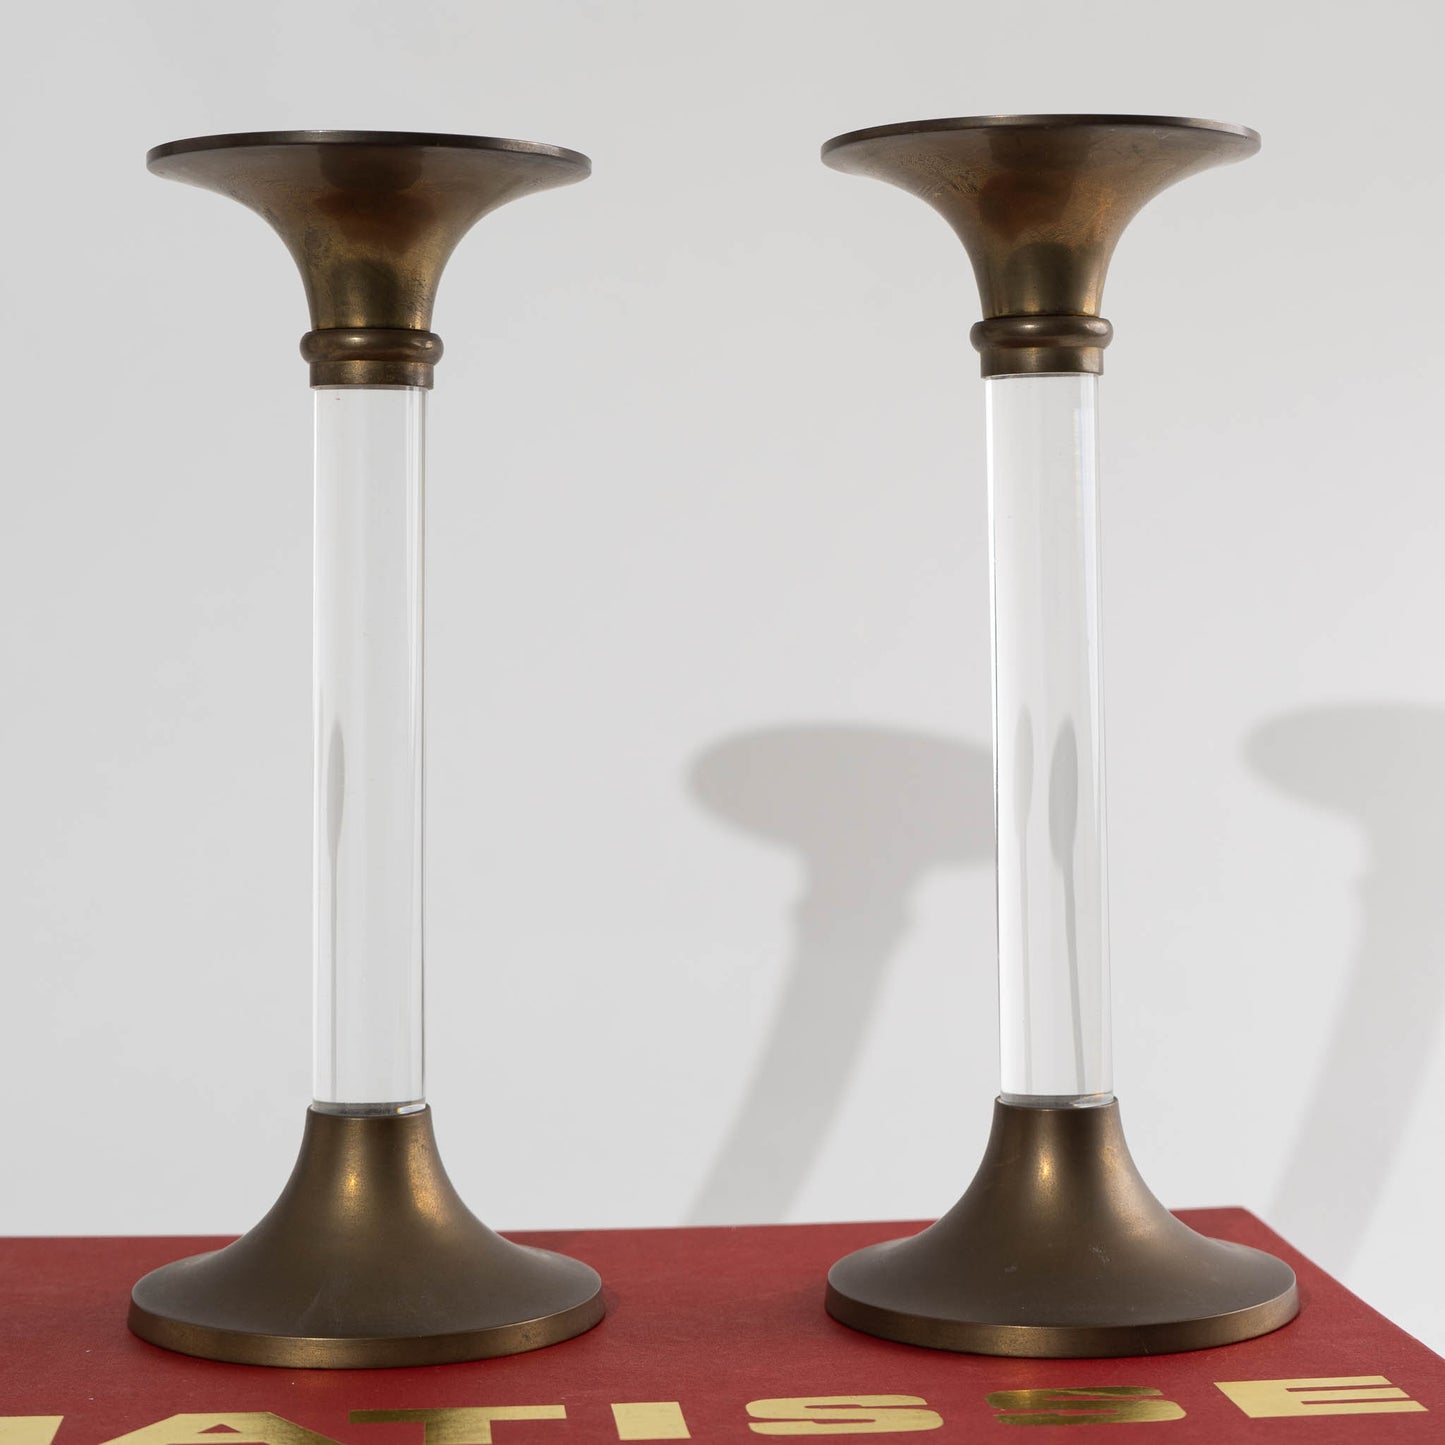 Vintage Brass Candlestick Holders - Set of 7 – The Vintage Advisor